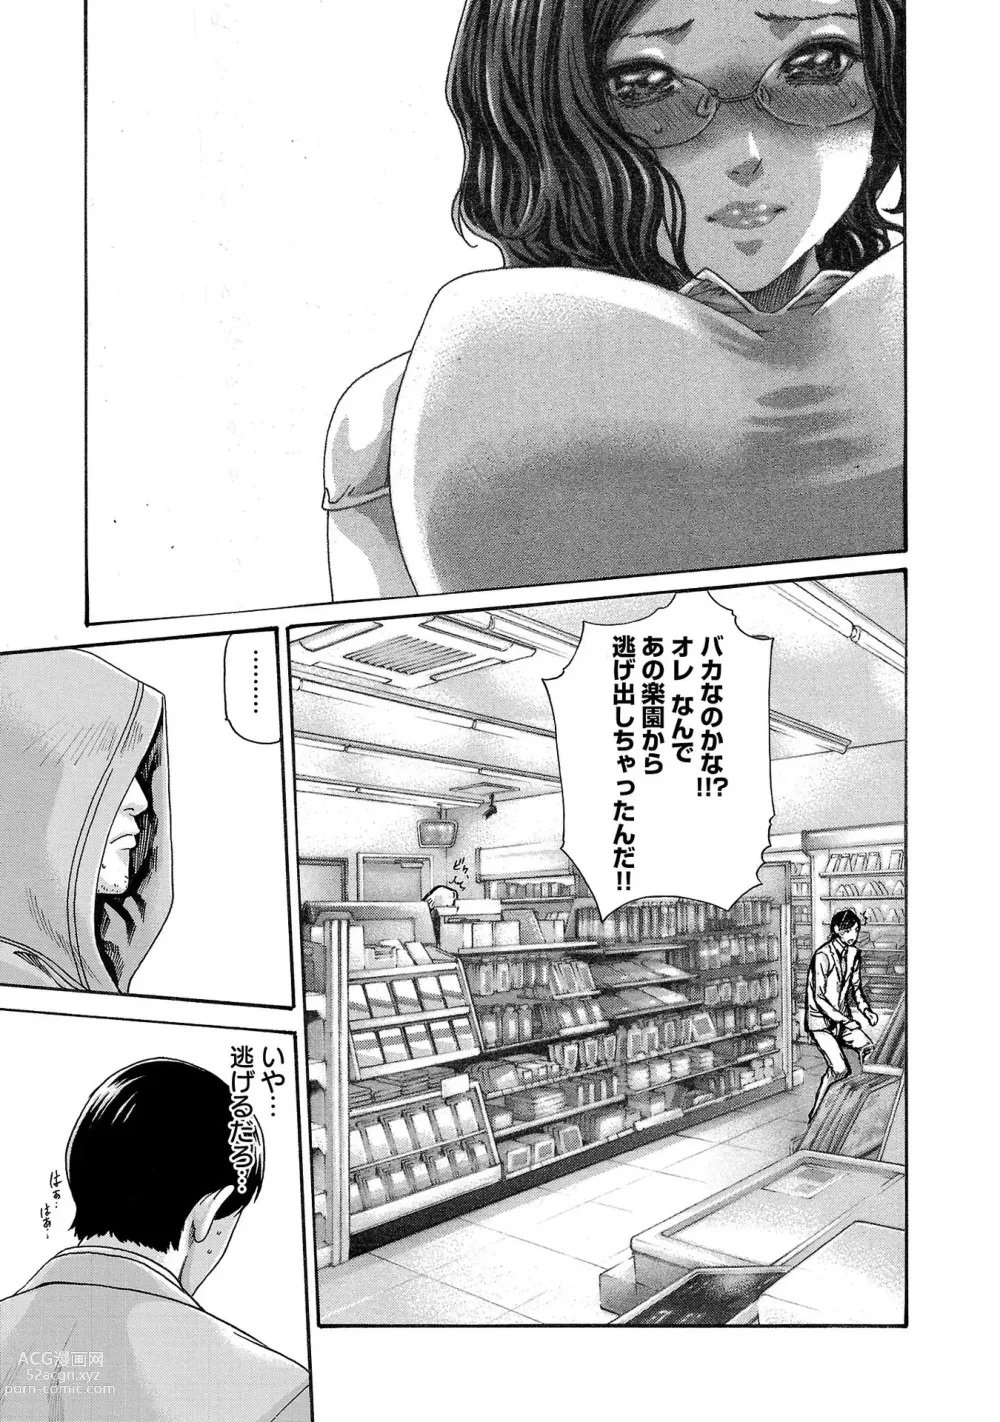 Page 10 of manga sense volume 13